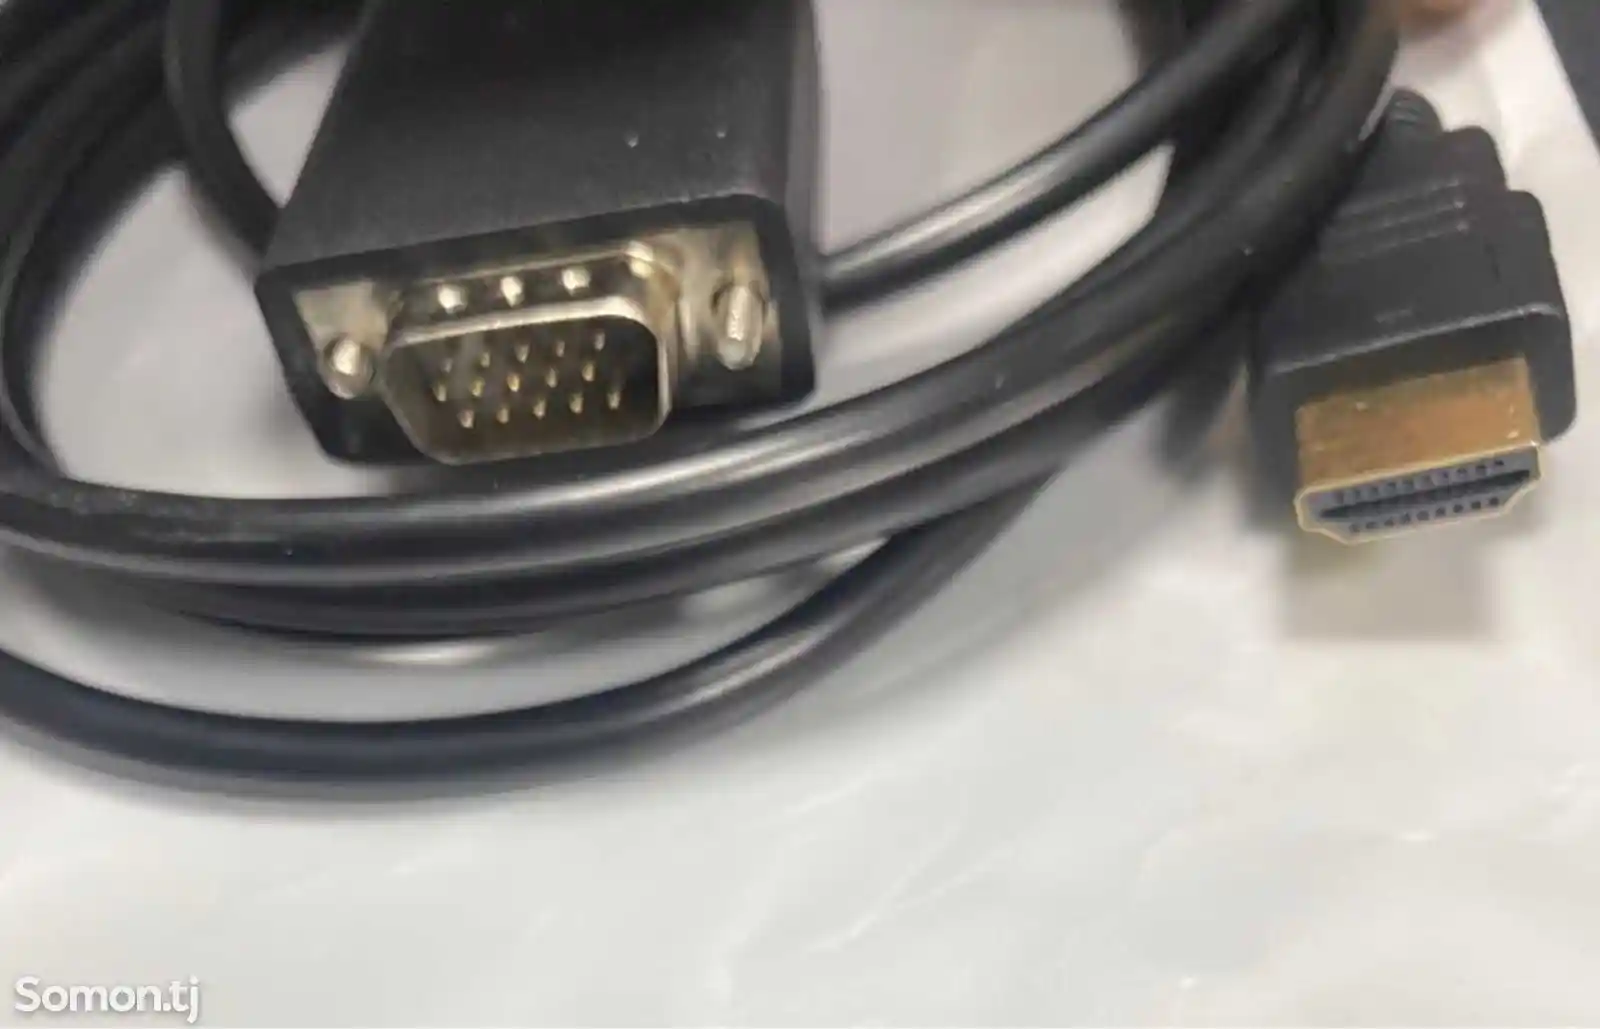 Кабель VGA to HDMI-2